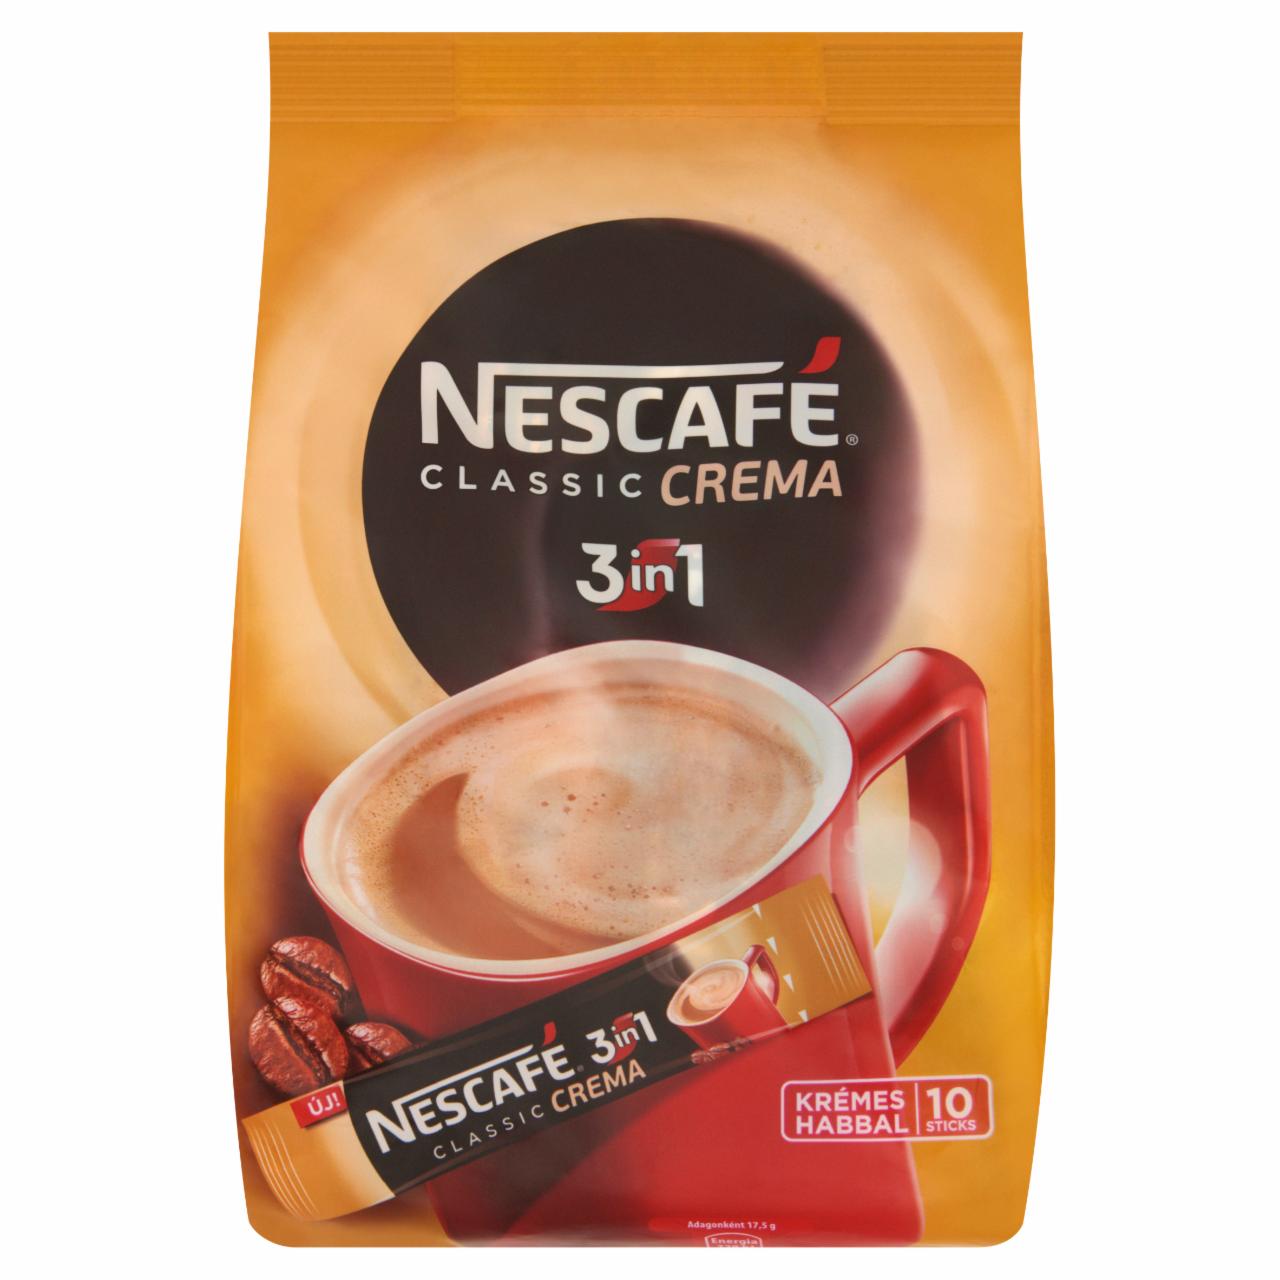 Képek - Nescafé 3in1 Classic Crema azonnal oldódó kávéspecialitás 10 db 175 g